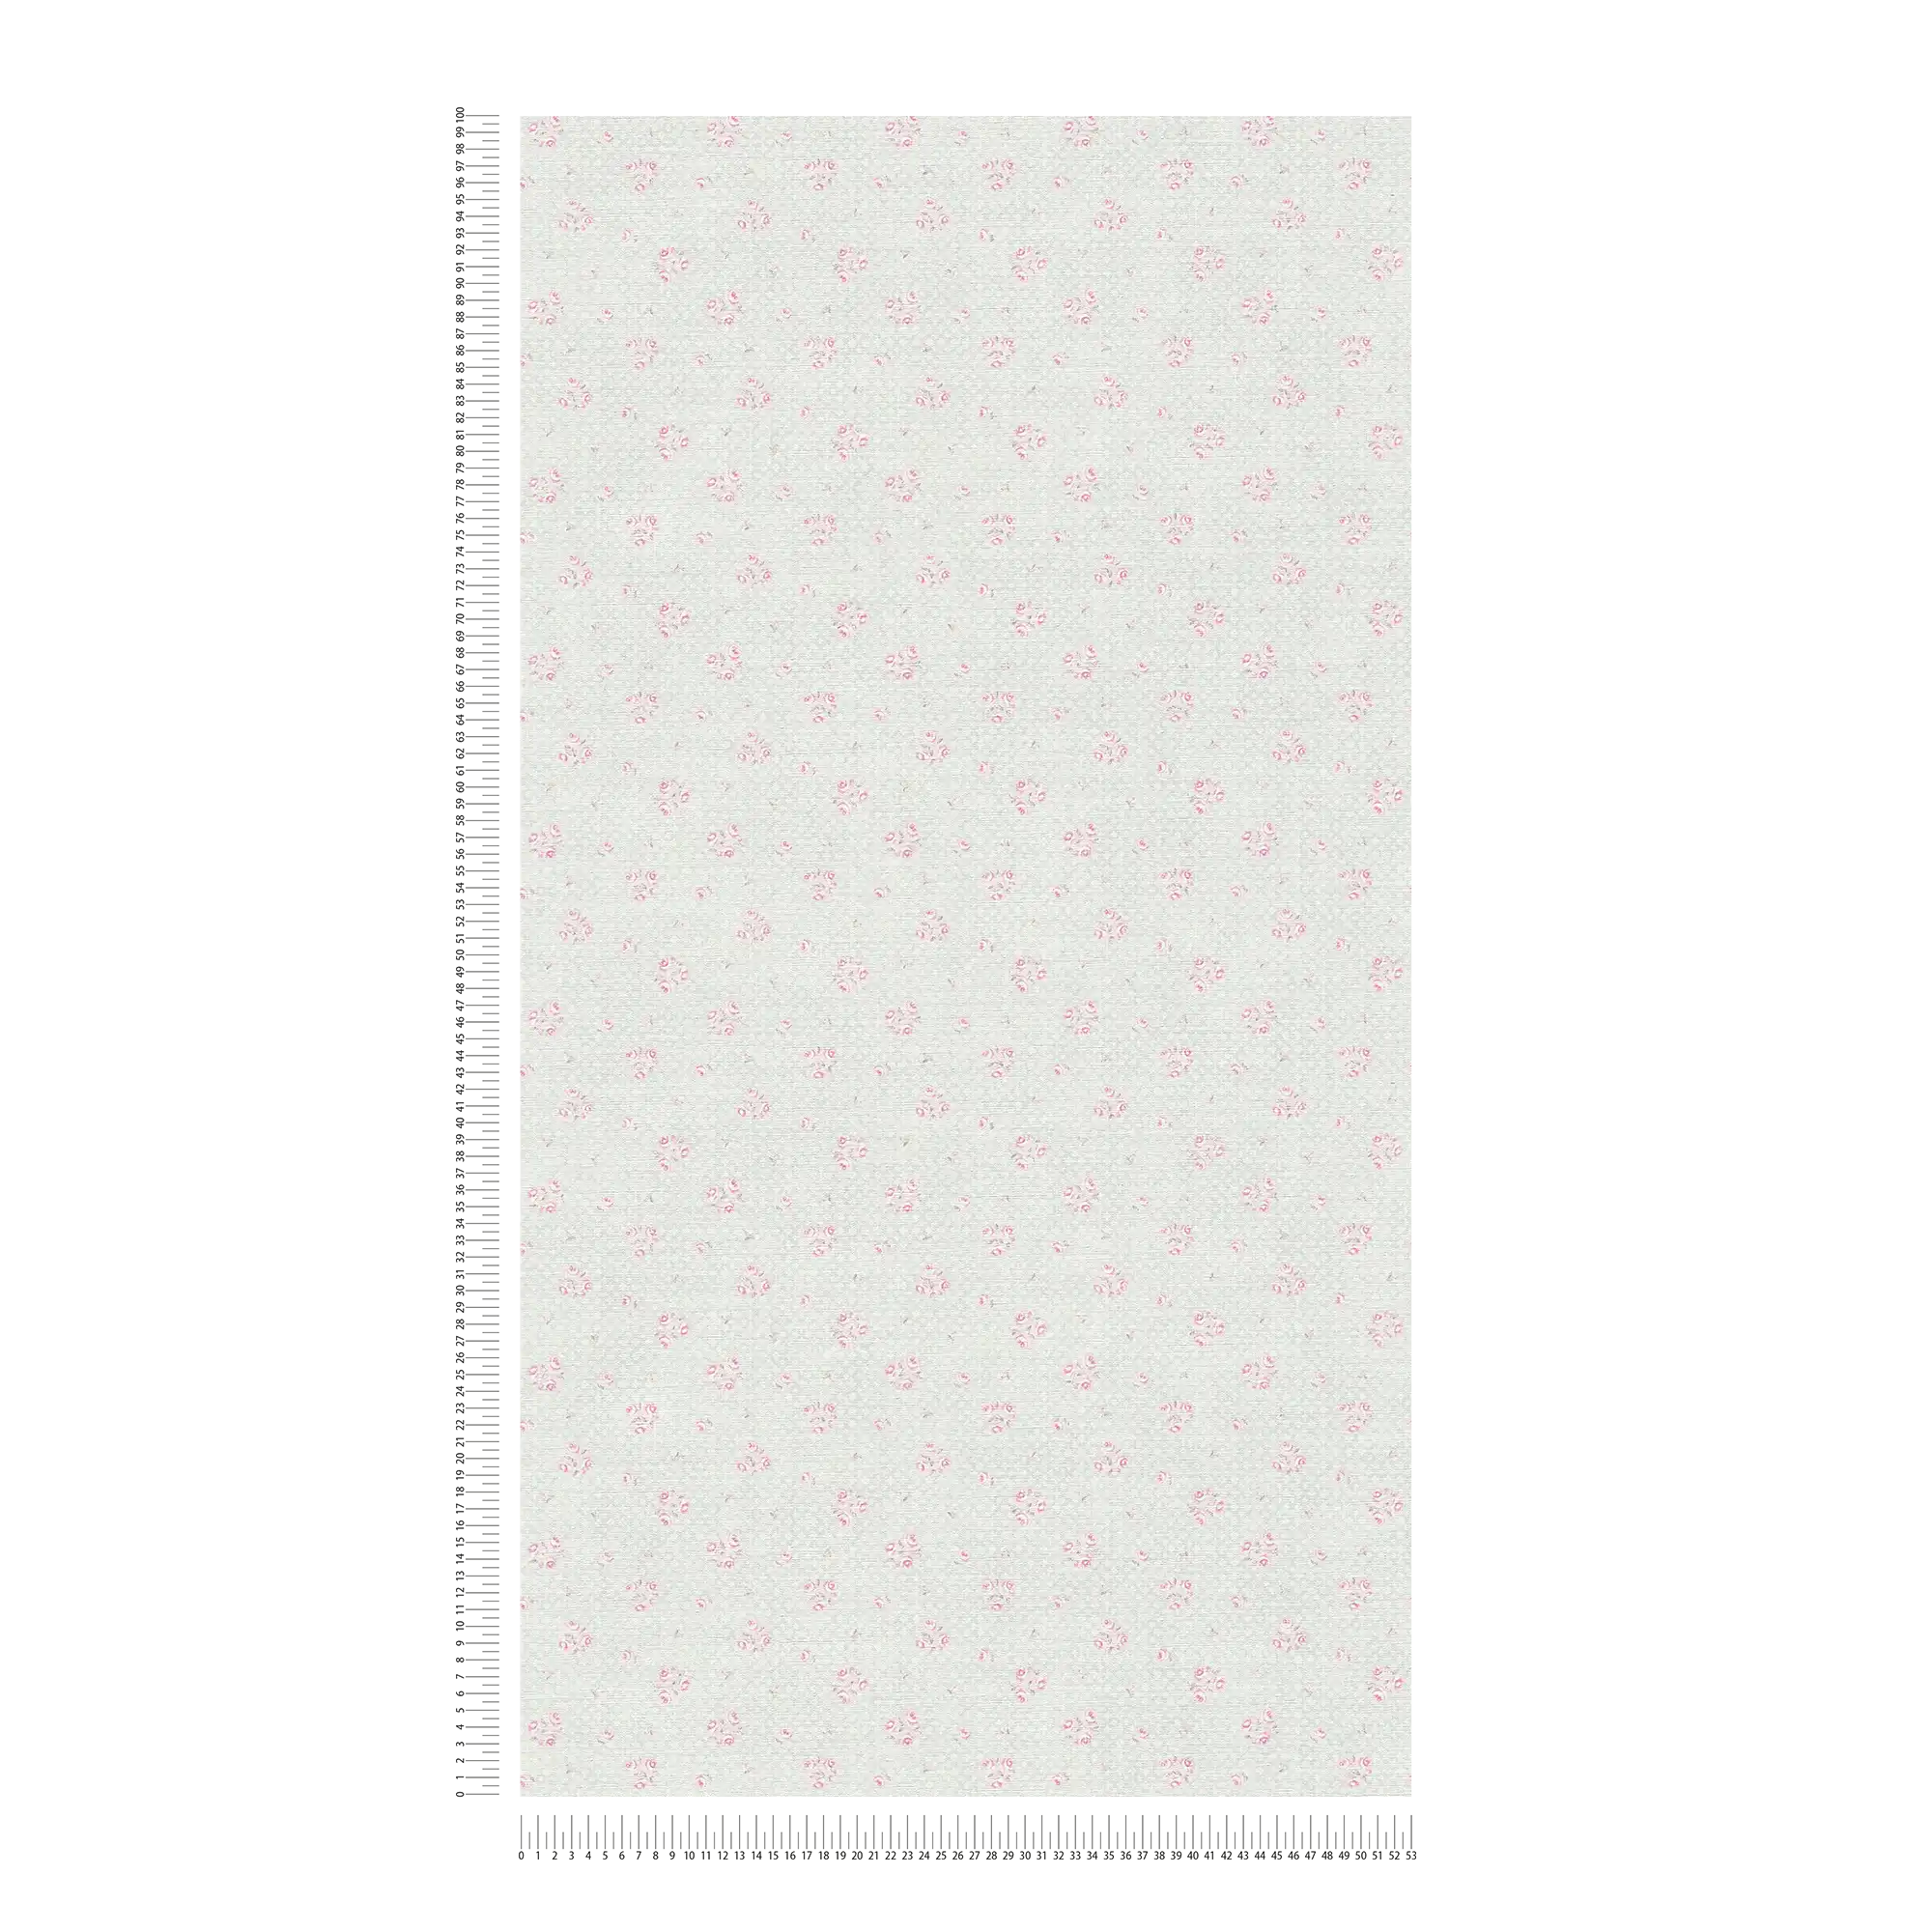             Vliesbehang met bloemenmotief in Shabby Chic stijl - grijs, roze, wit
        